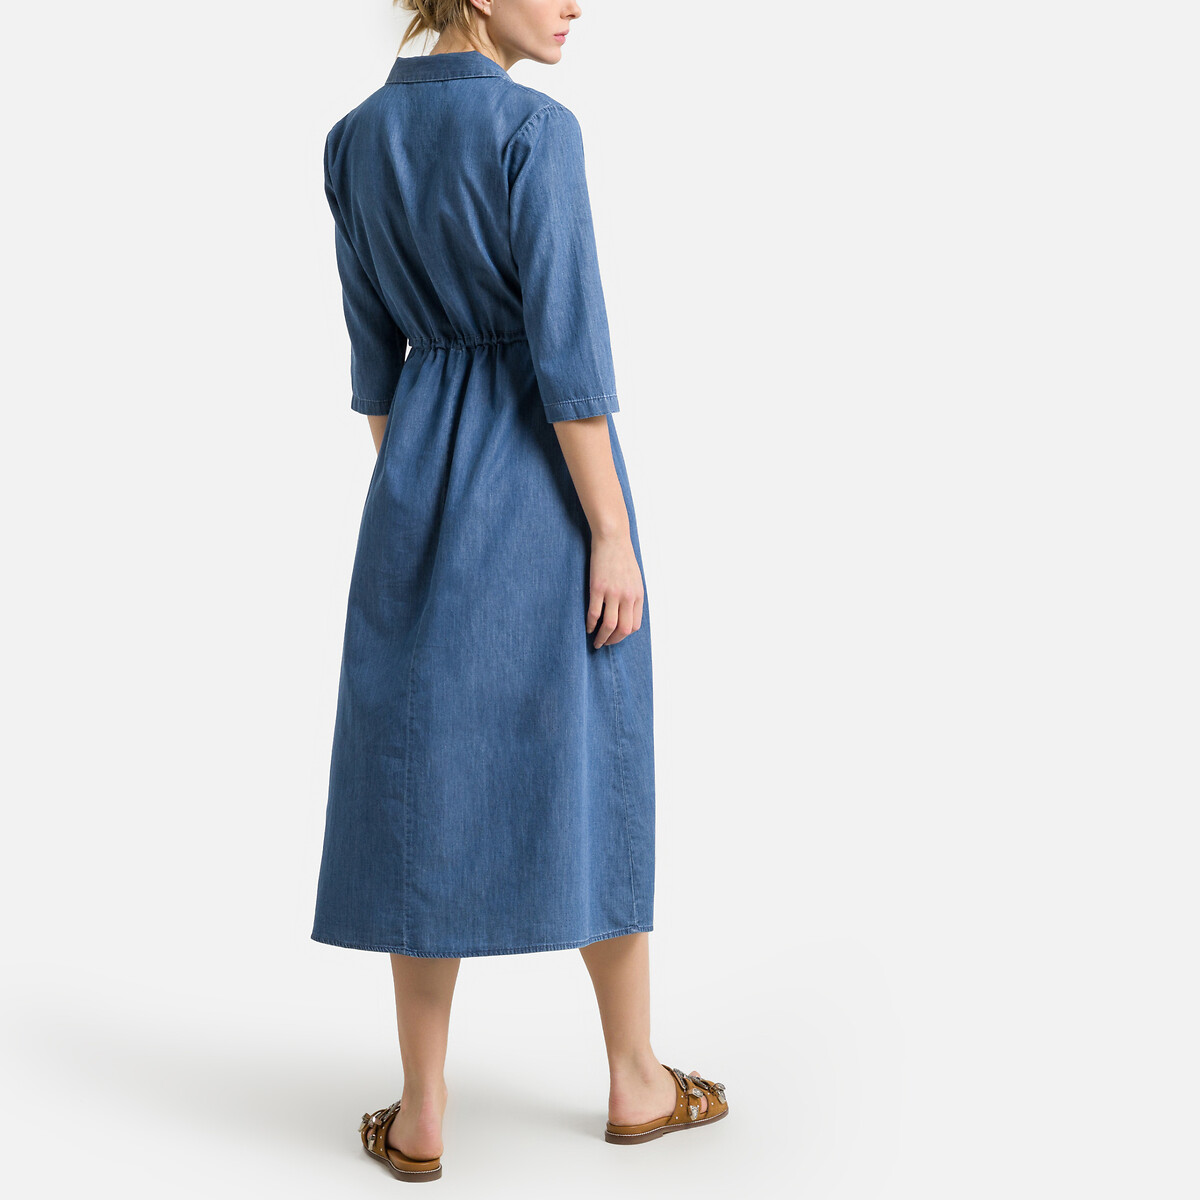 Платье JDY Расклешенное с рукавами 34 42 синий, размер 42 - фото 4